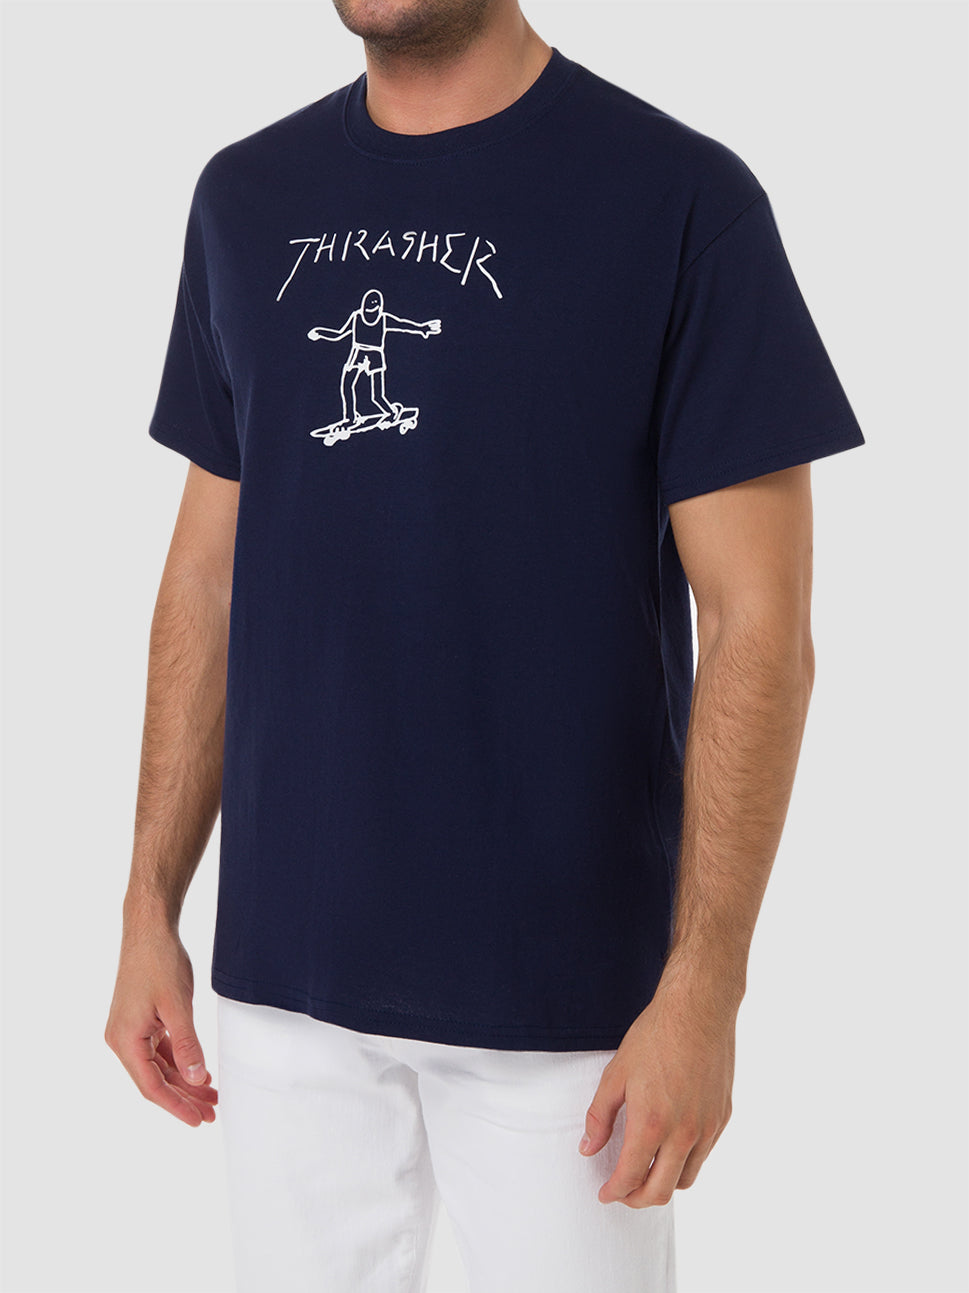 thrasher thrasher gonz by mark gonzales navy white t shirt